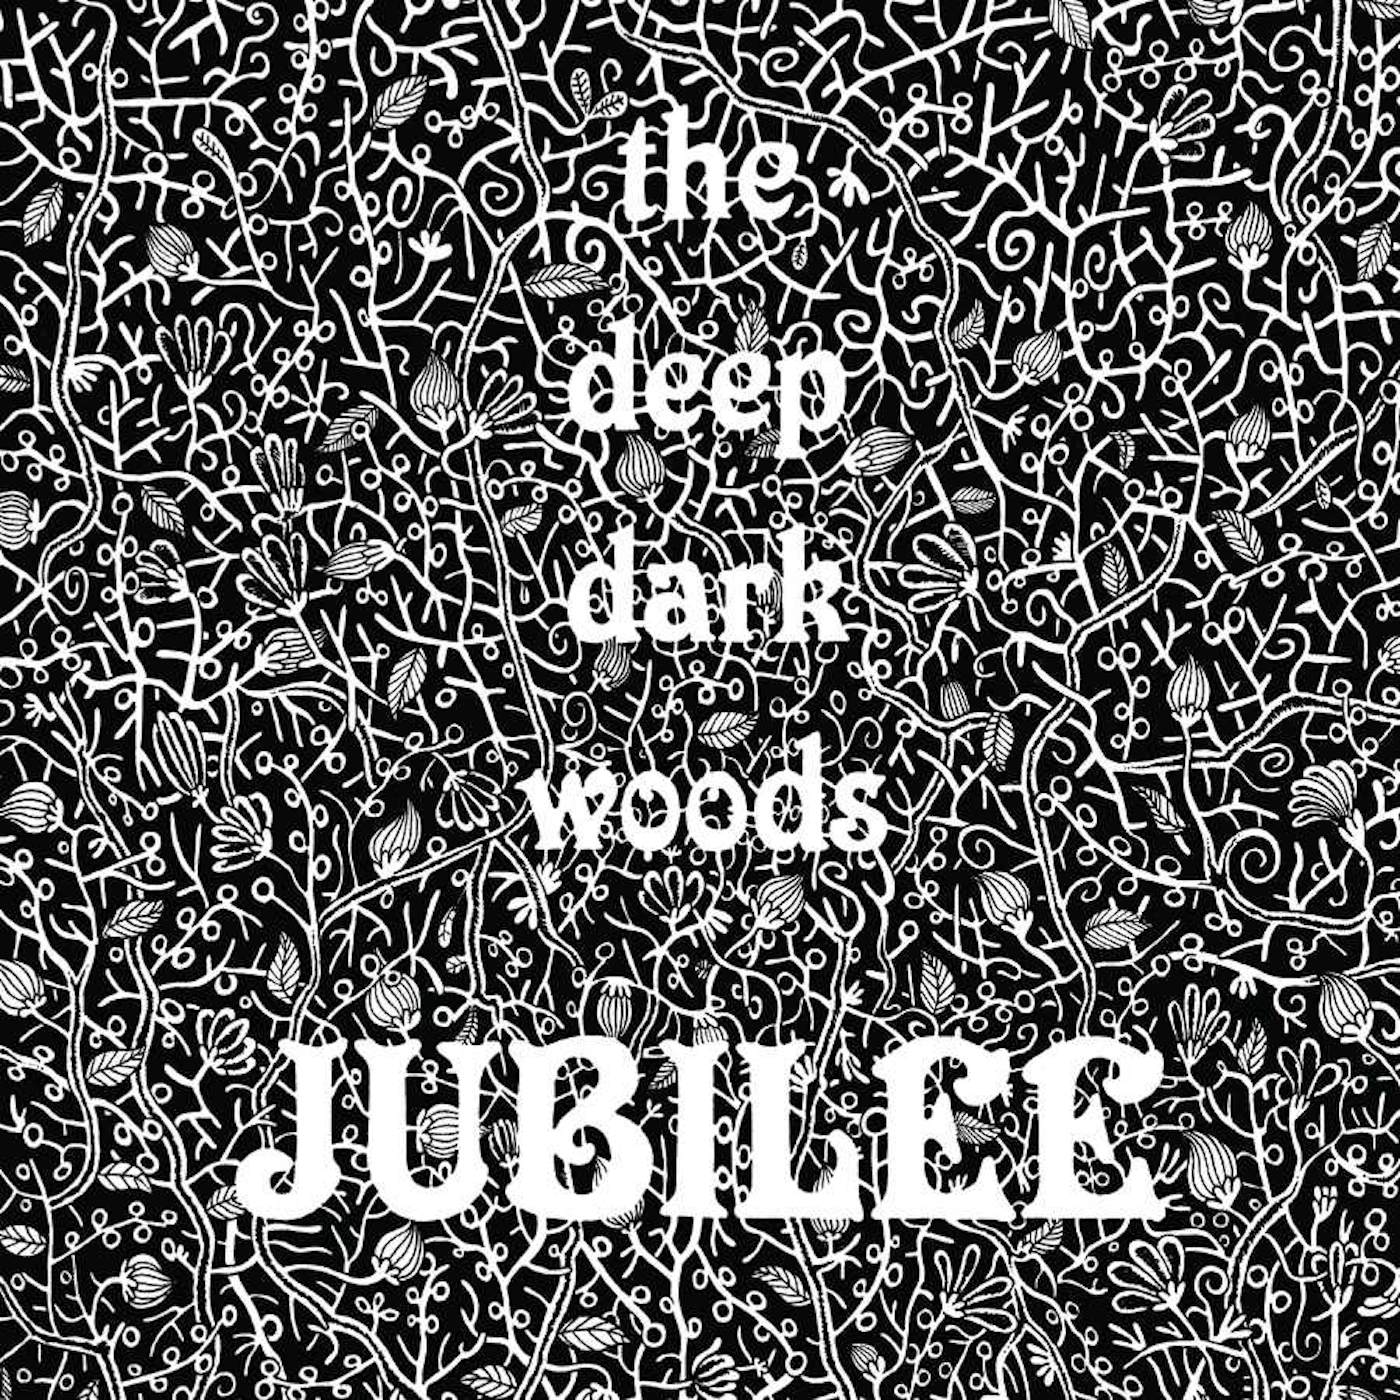 The Deep Dark Woods Jubilee CD